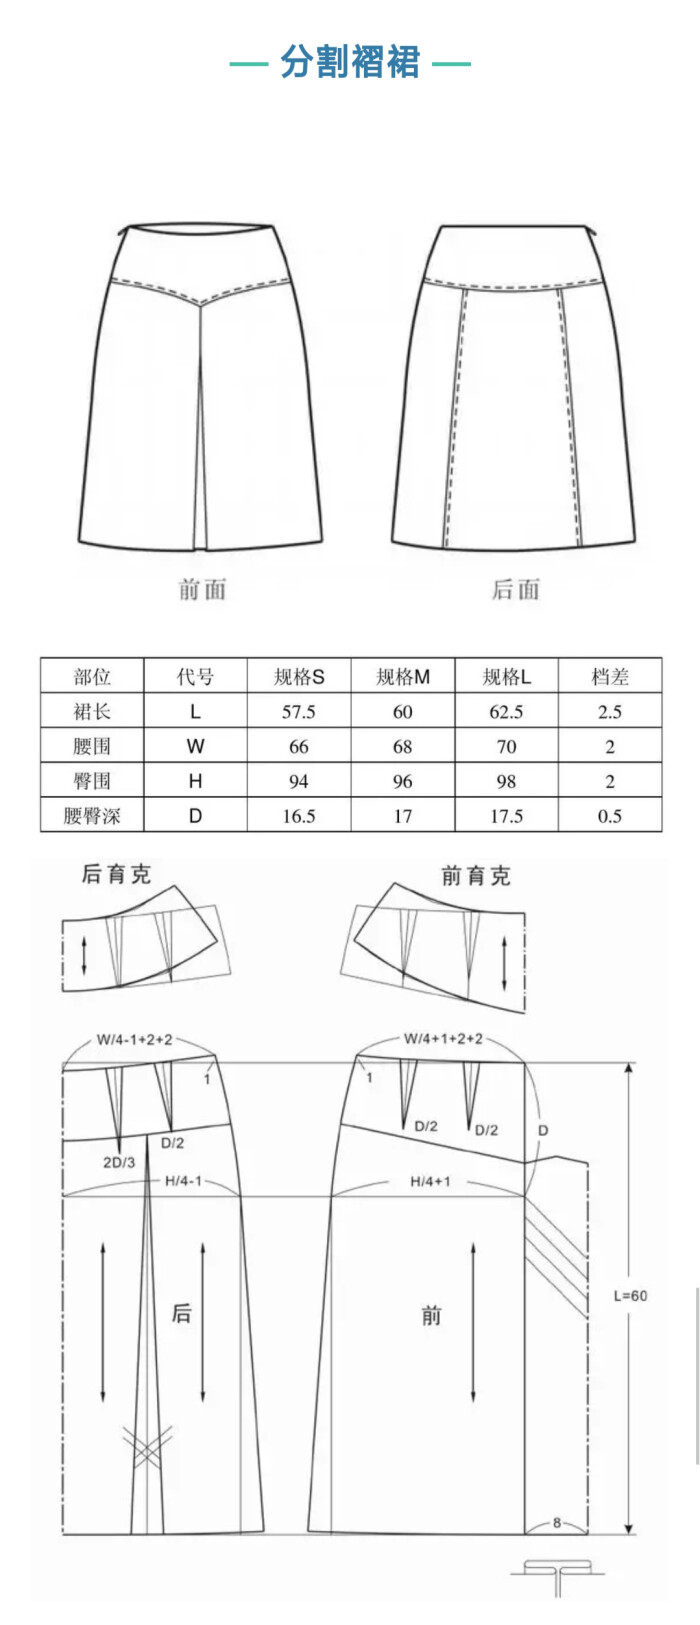 分割褶裙的制版图小裁缝学堂 1,款式说明,示意图及规格尺寸 2,规格